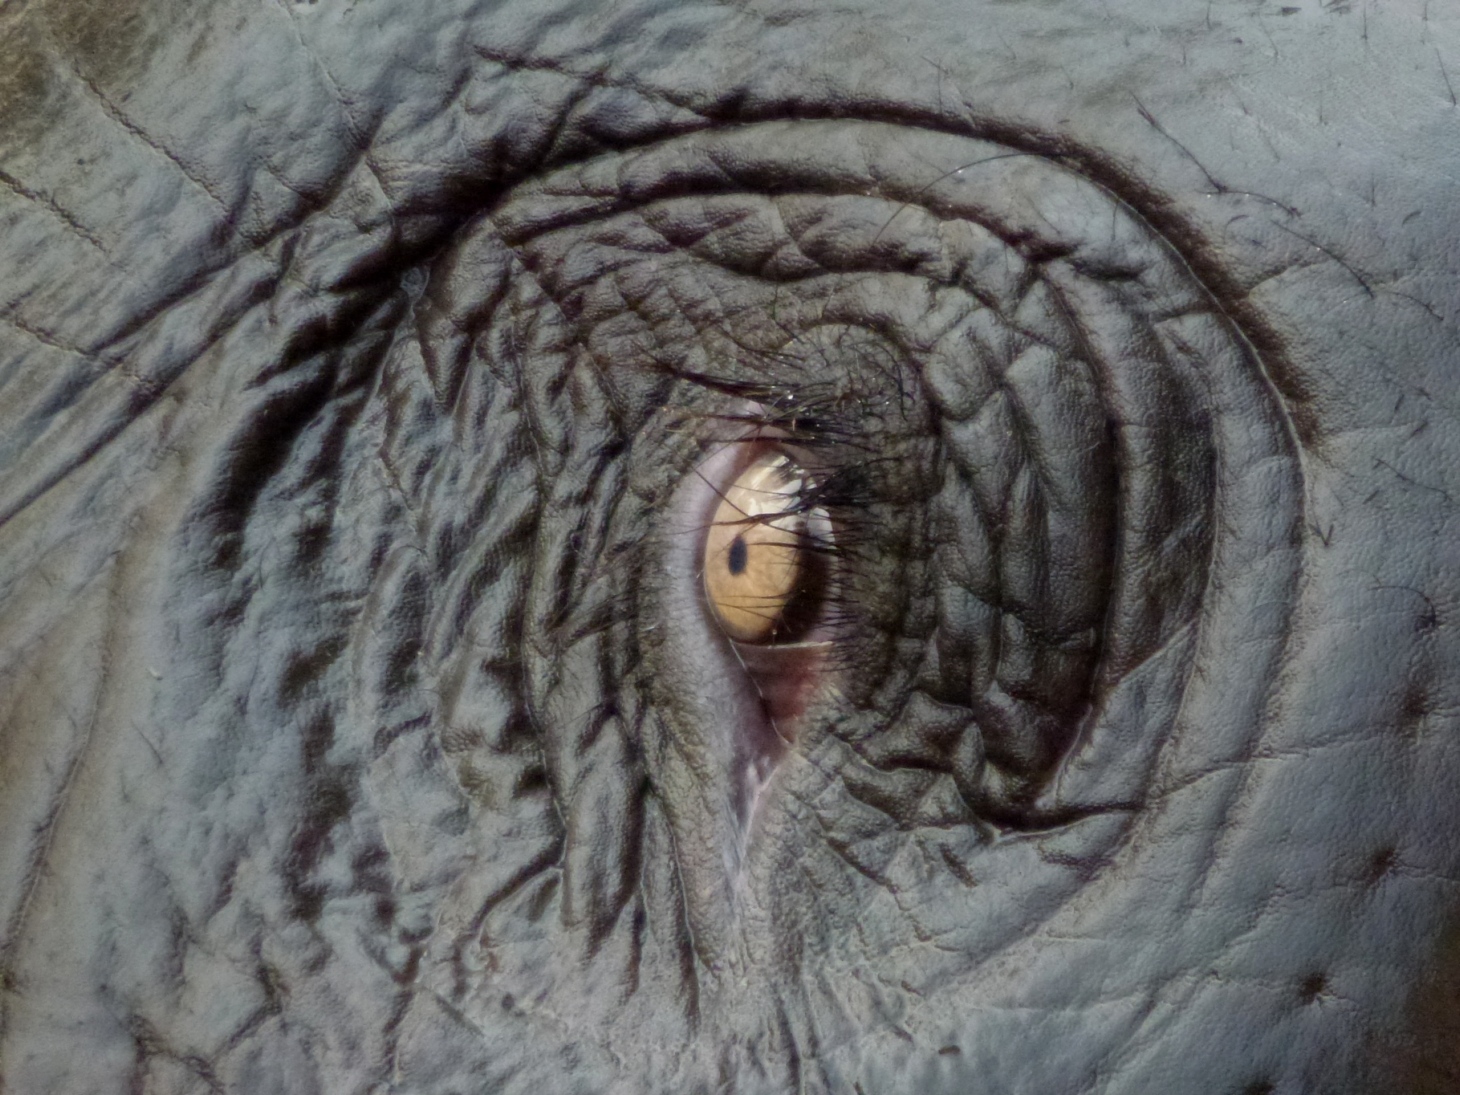 malé oko velkého slona